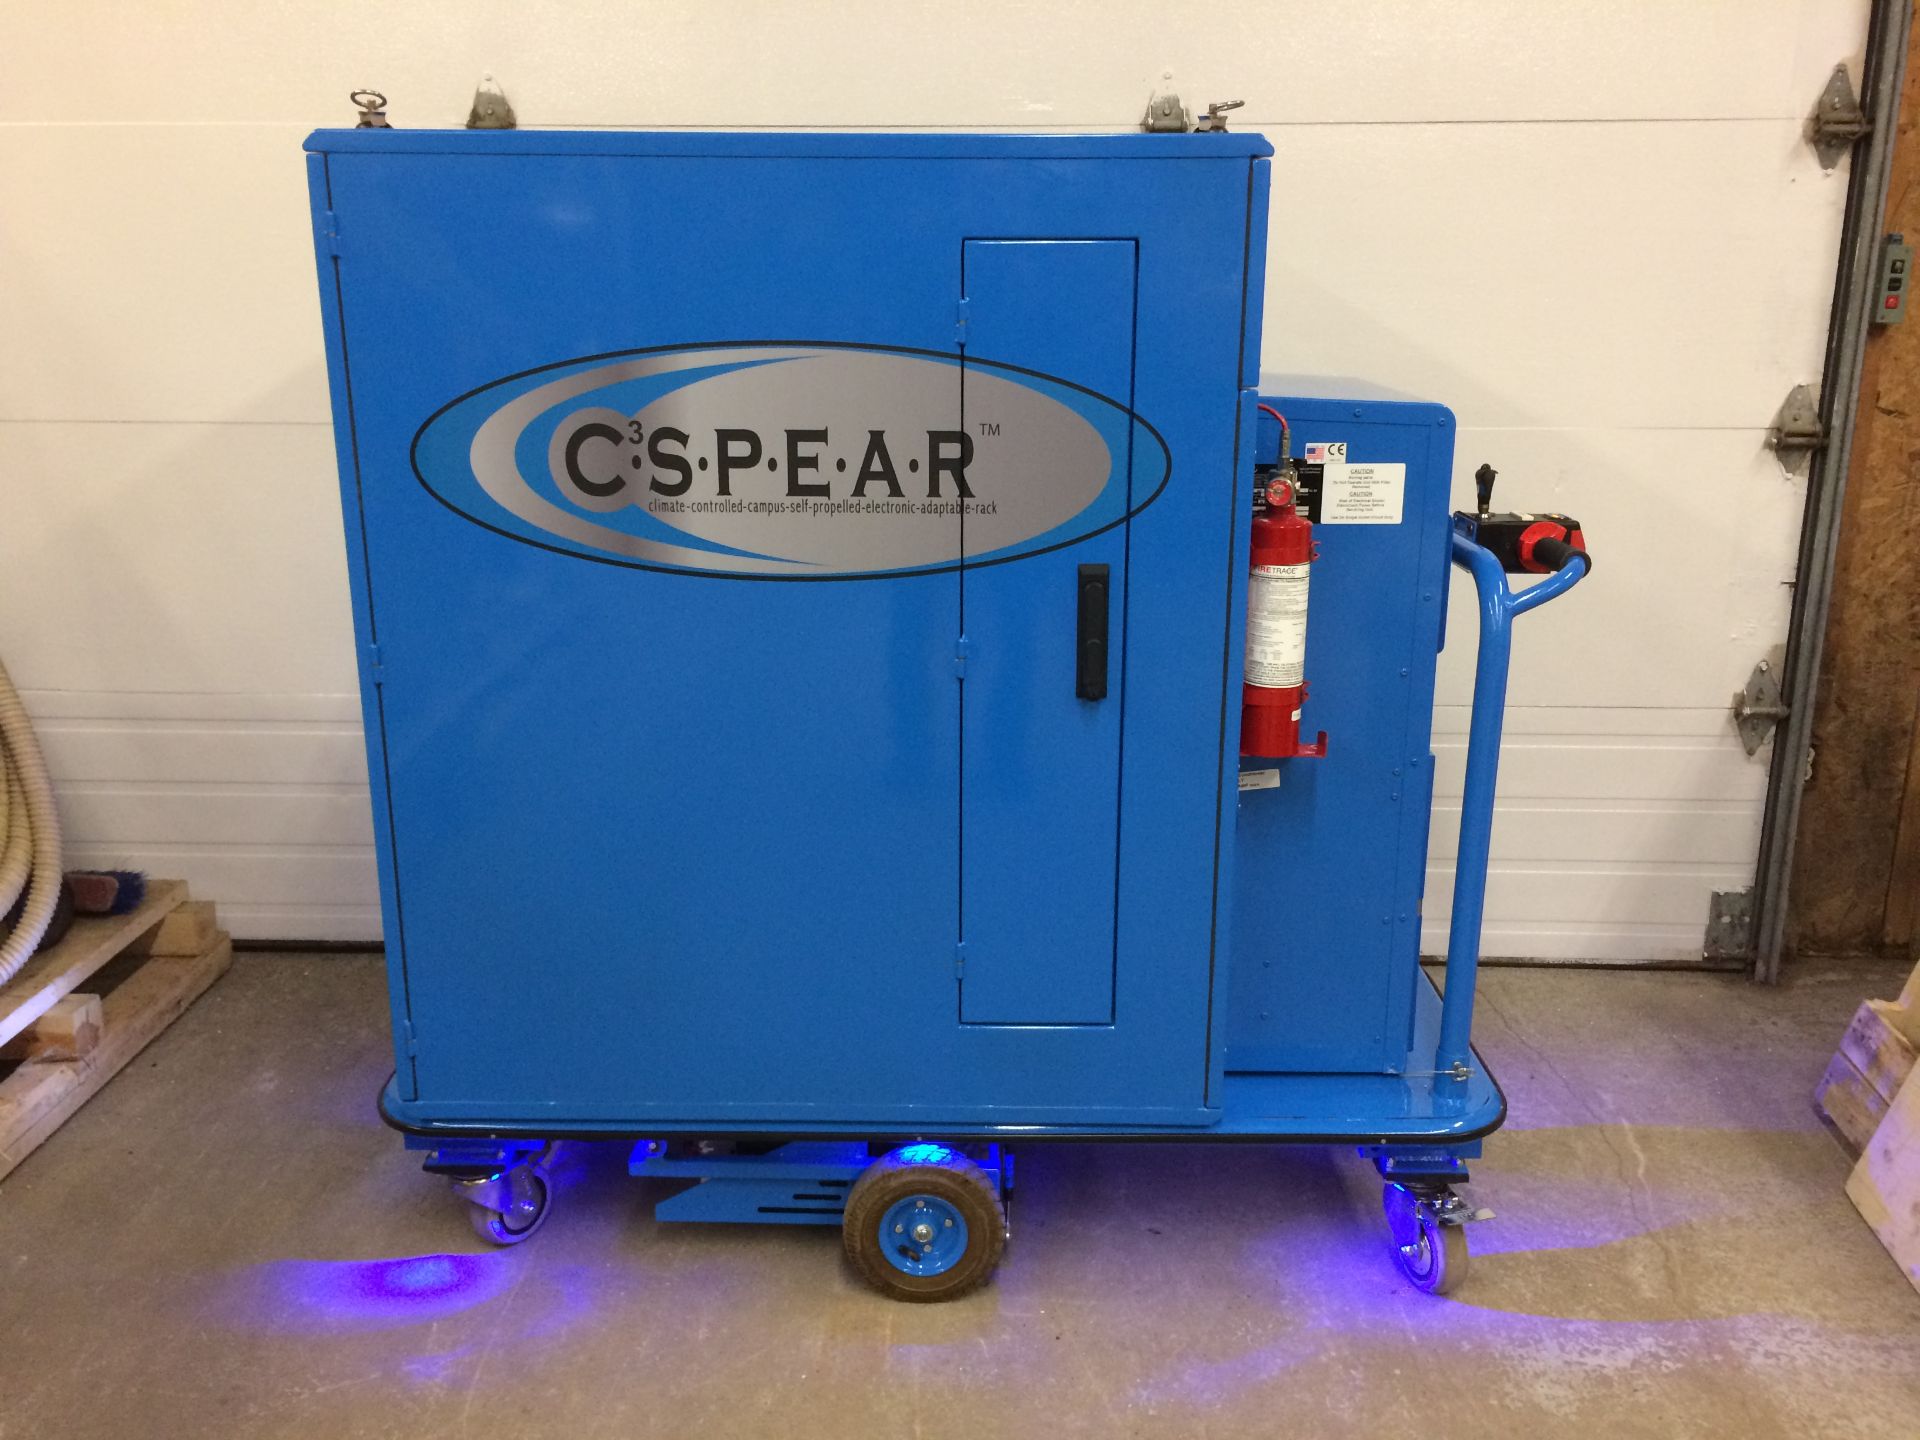 Cabinet de serveur mobile (auto-porter) réfrigéré C3 SPEAR (location Vaudreuil,QC) - C3 SPEAR cooled